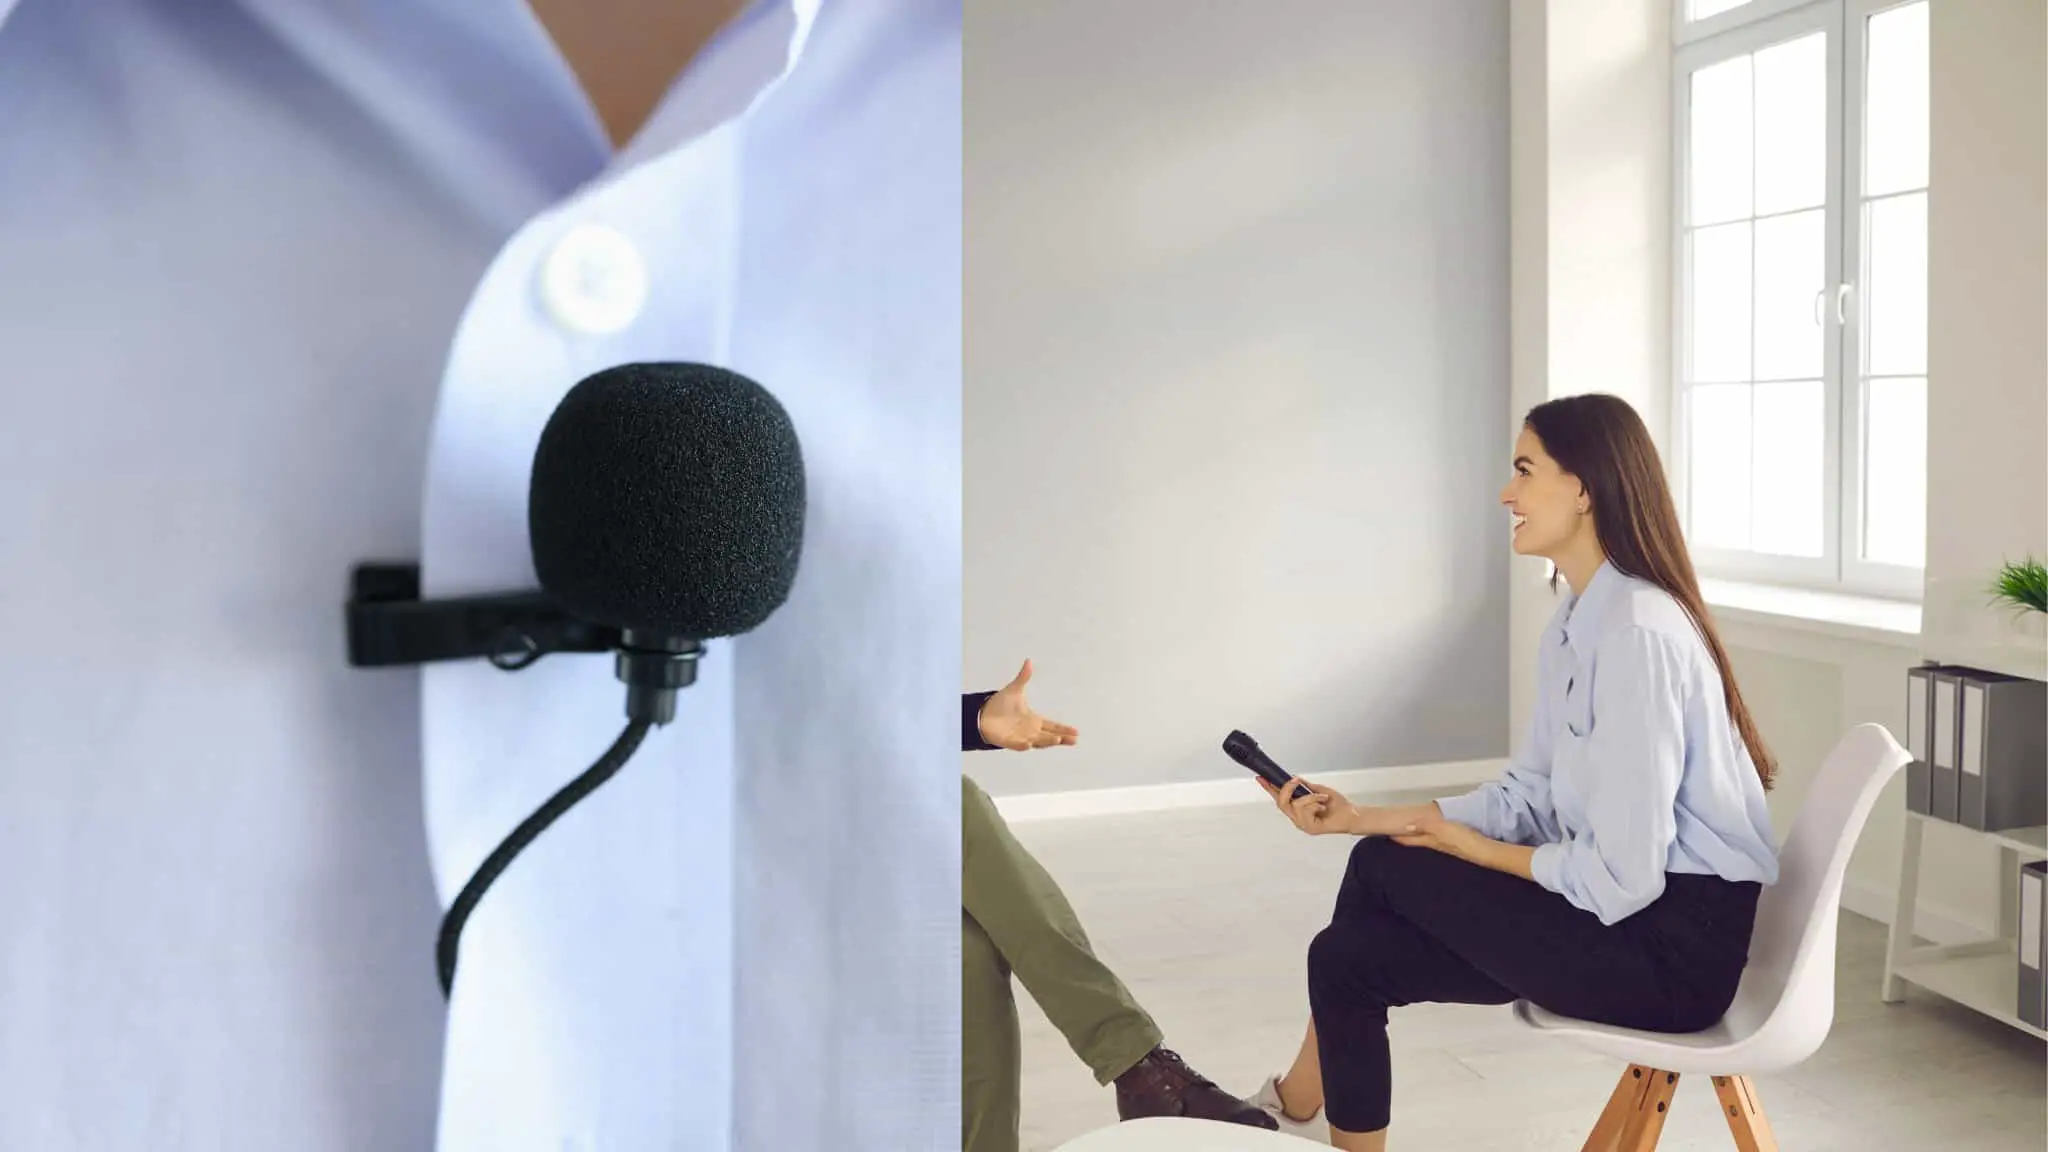 Петличний мікрофон проти портативного: що краще для співбесід?